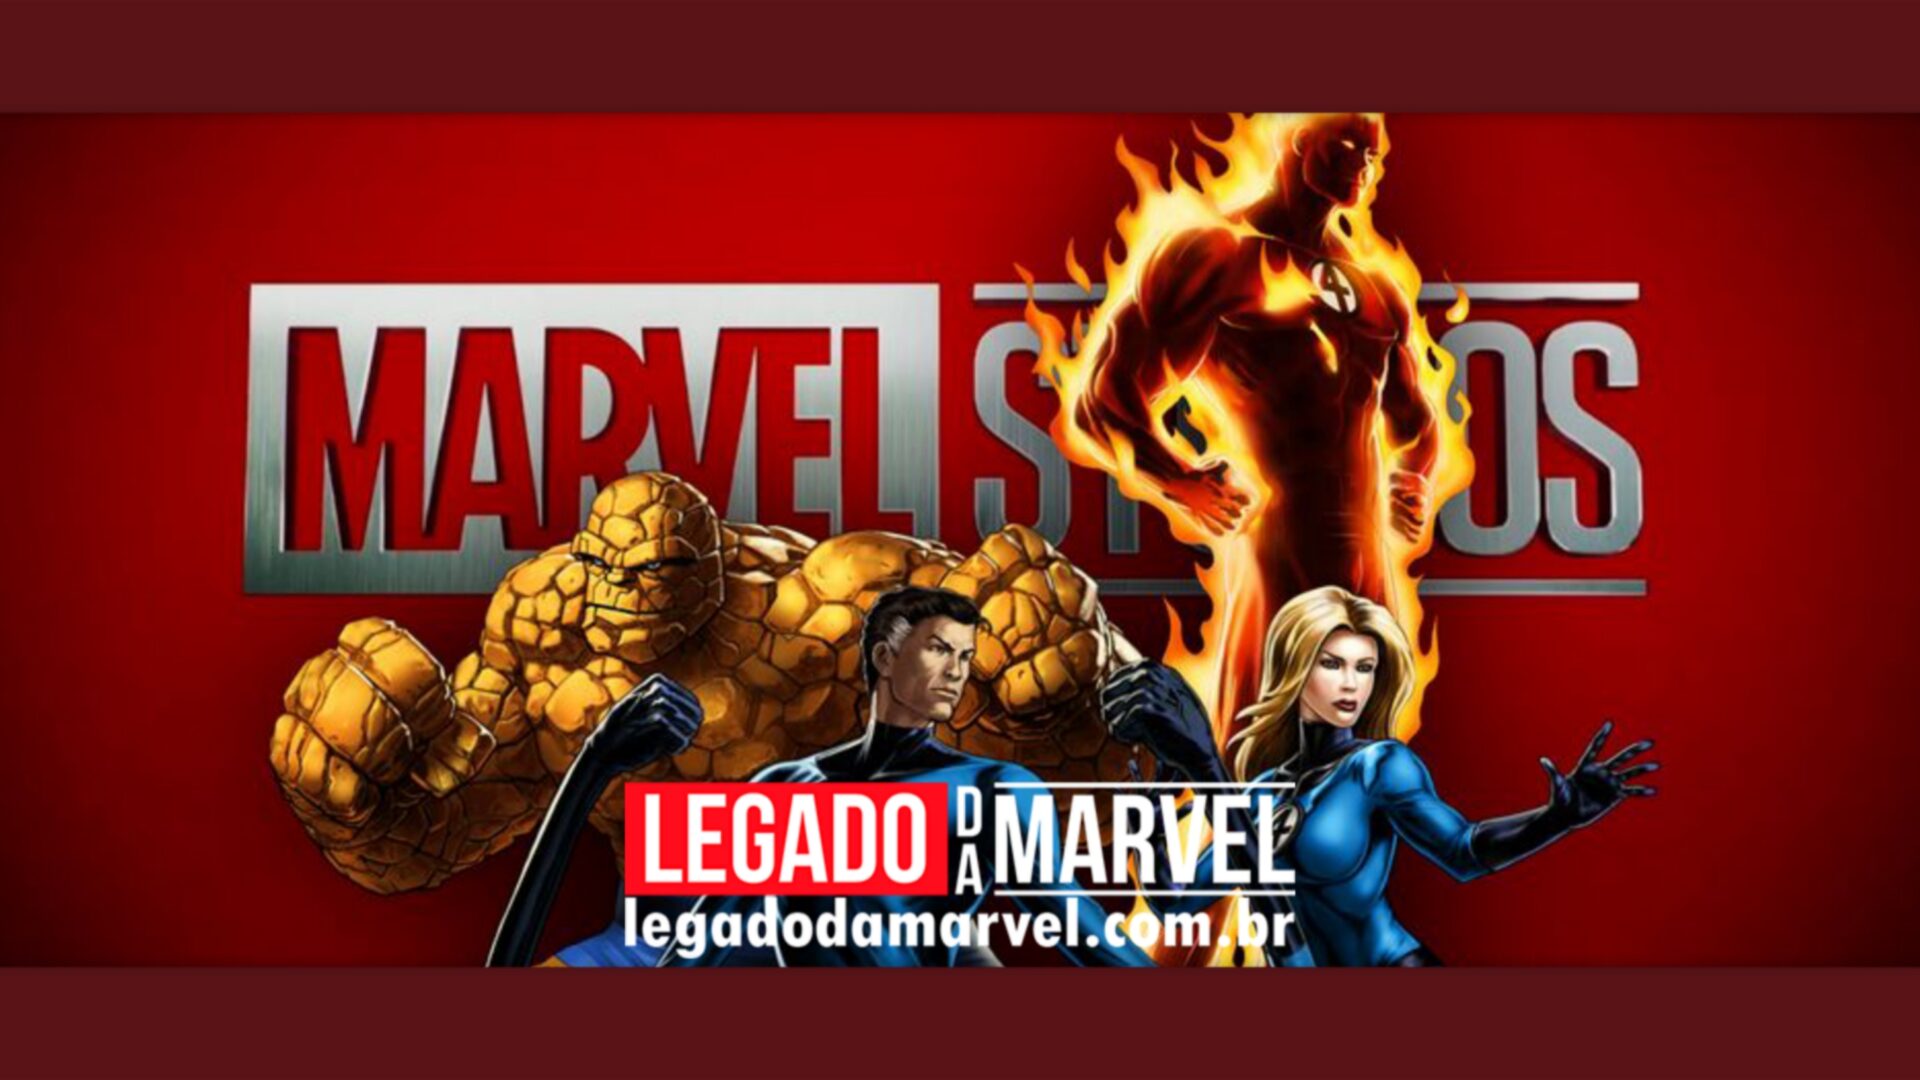 Fãs se revoltam com elenco do novo Quarteto Fantástico na Marvel